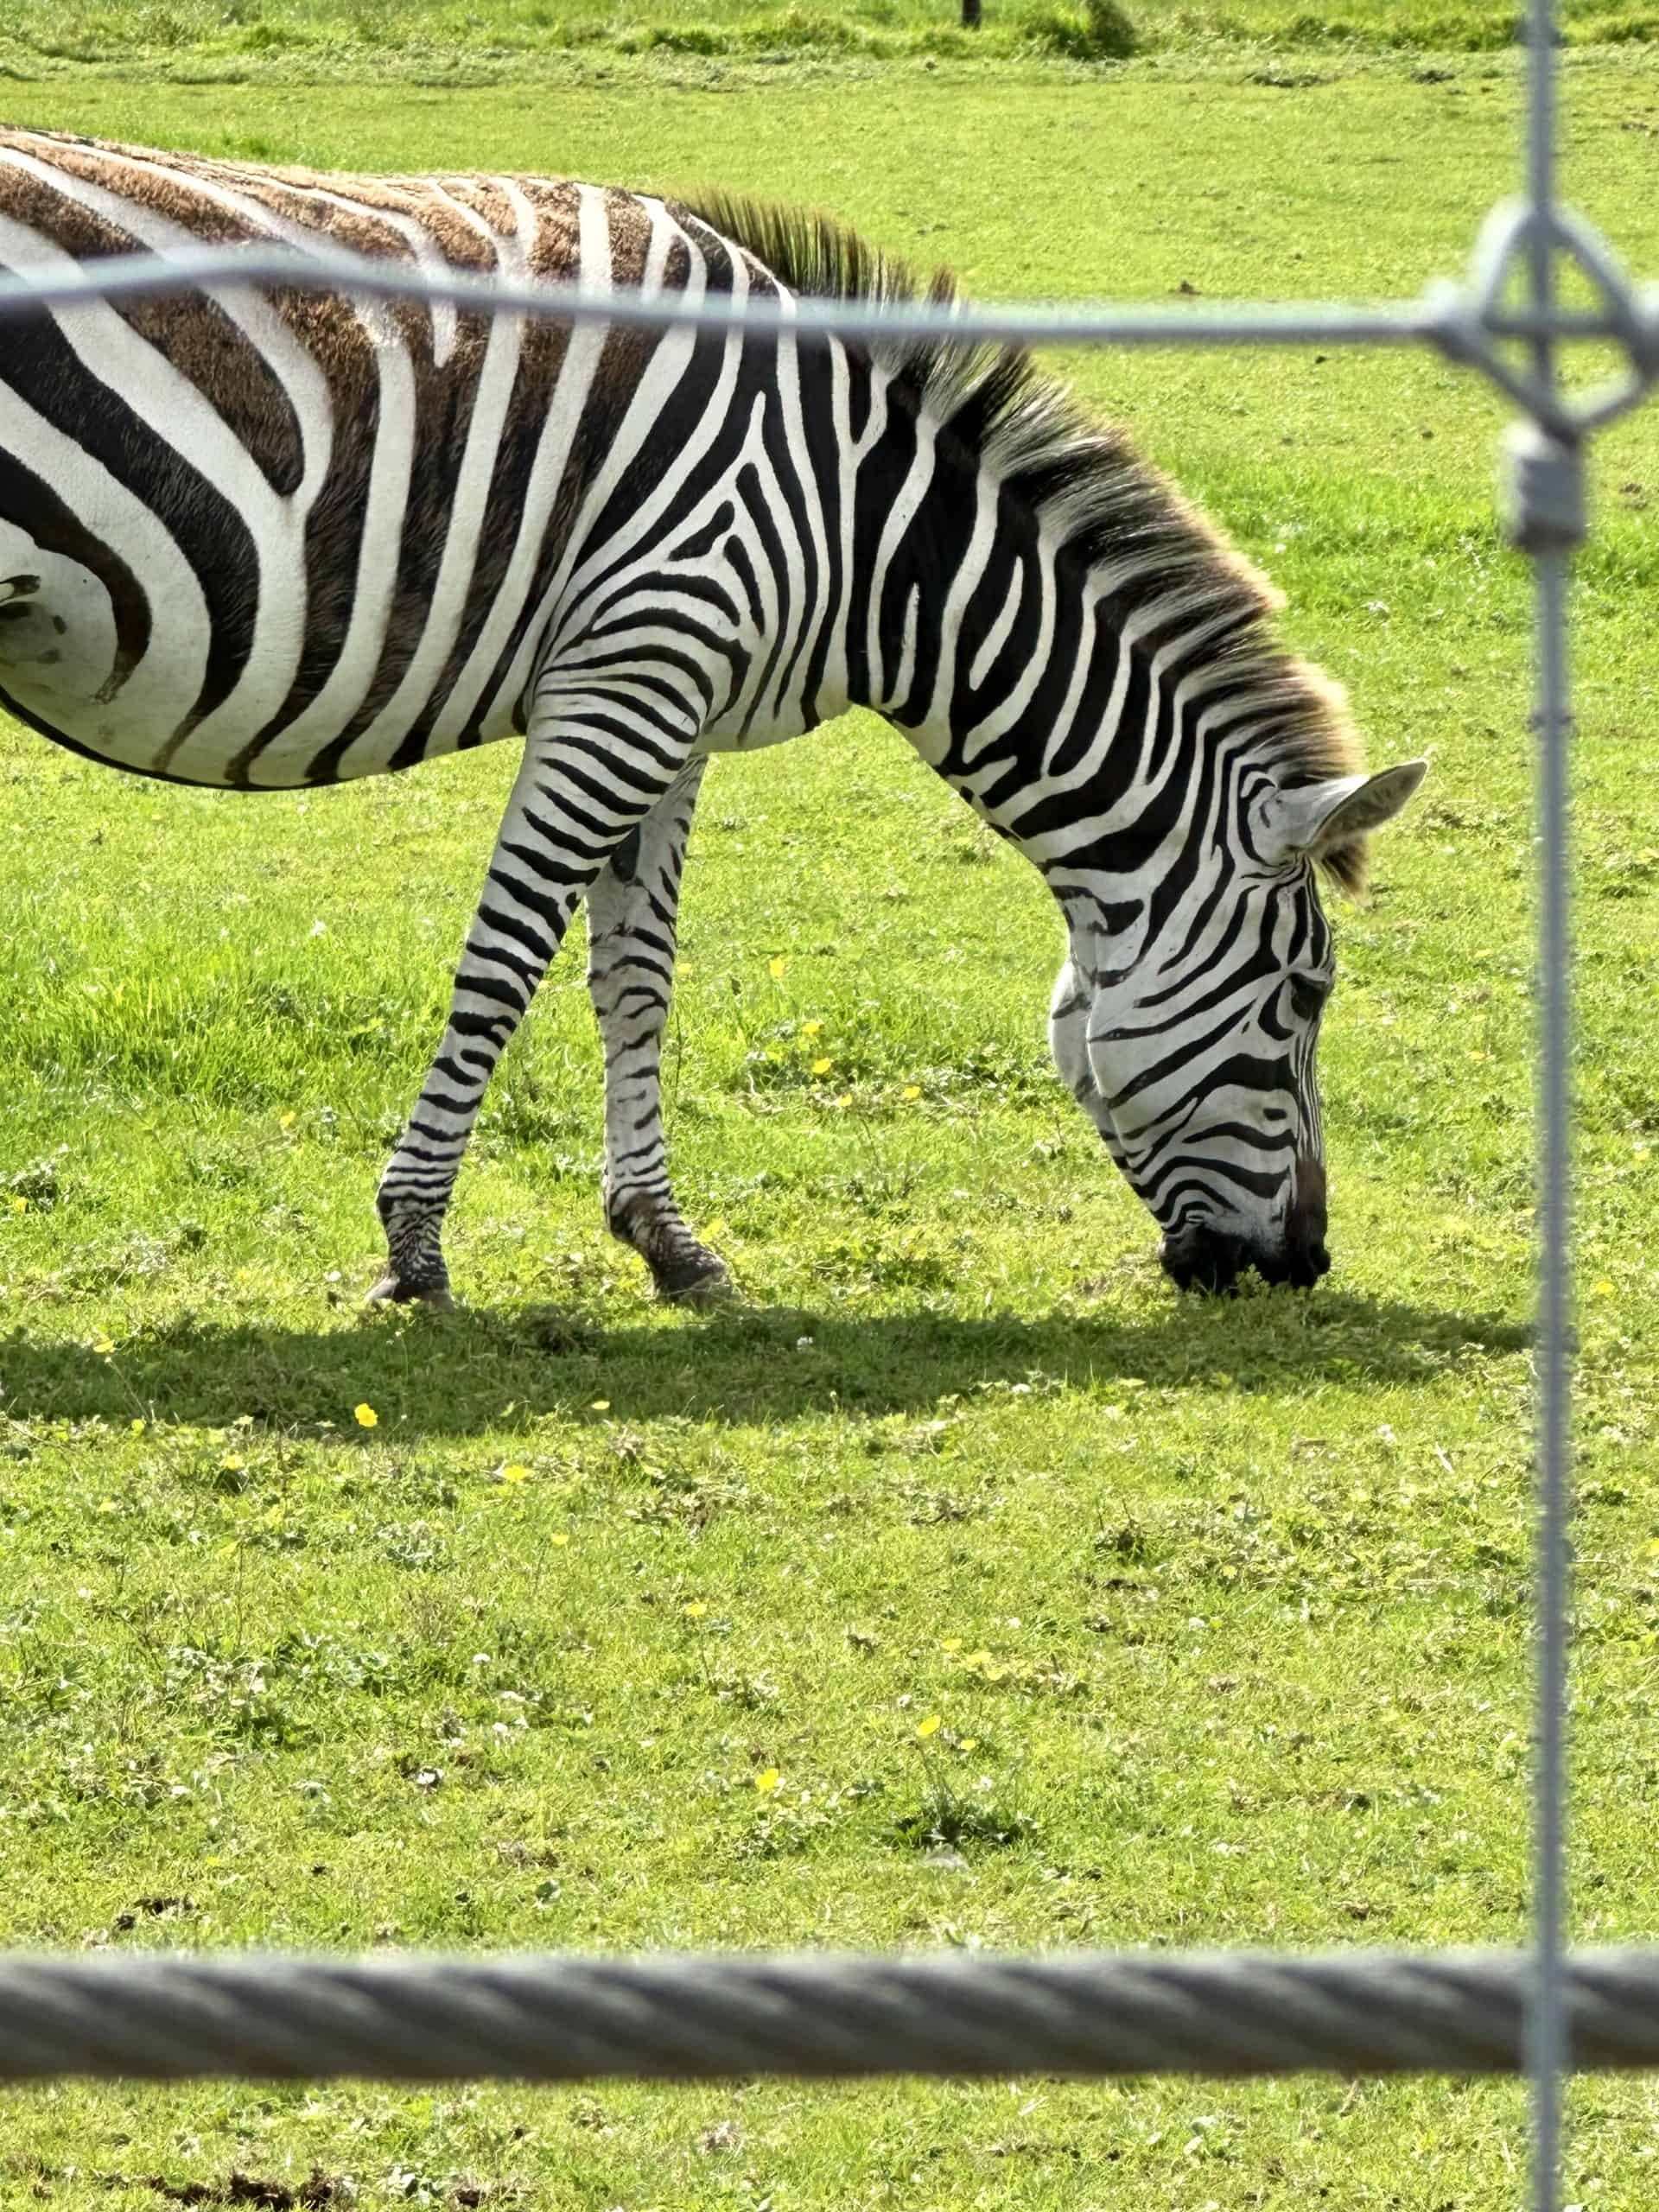 noahs-ark-zoo-farm-zebra
